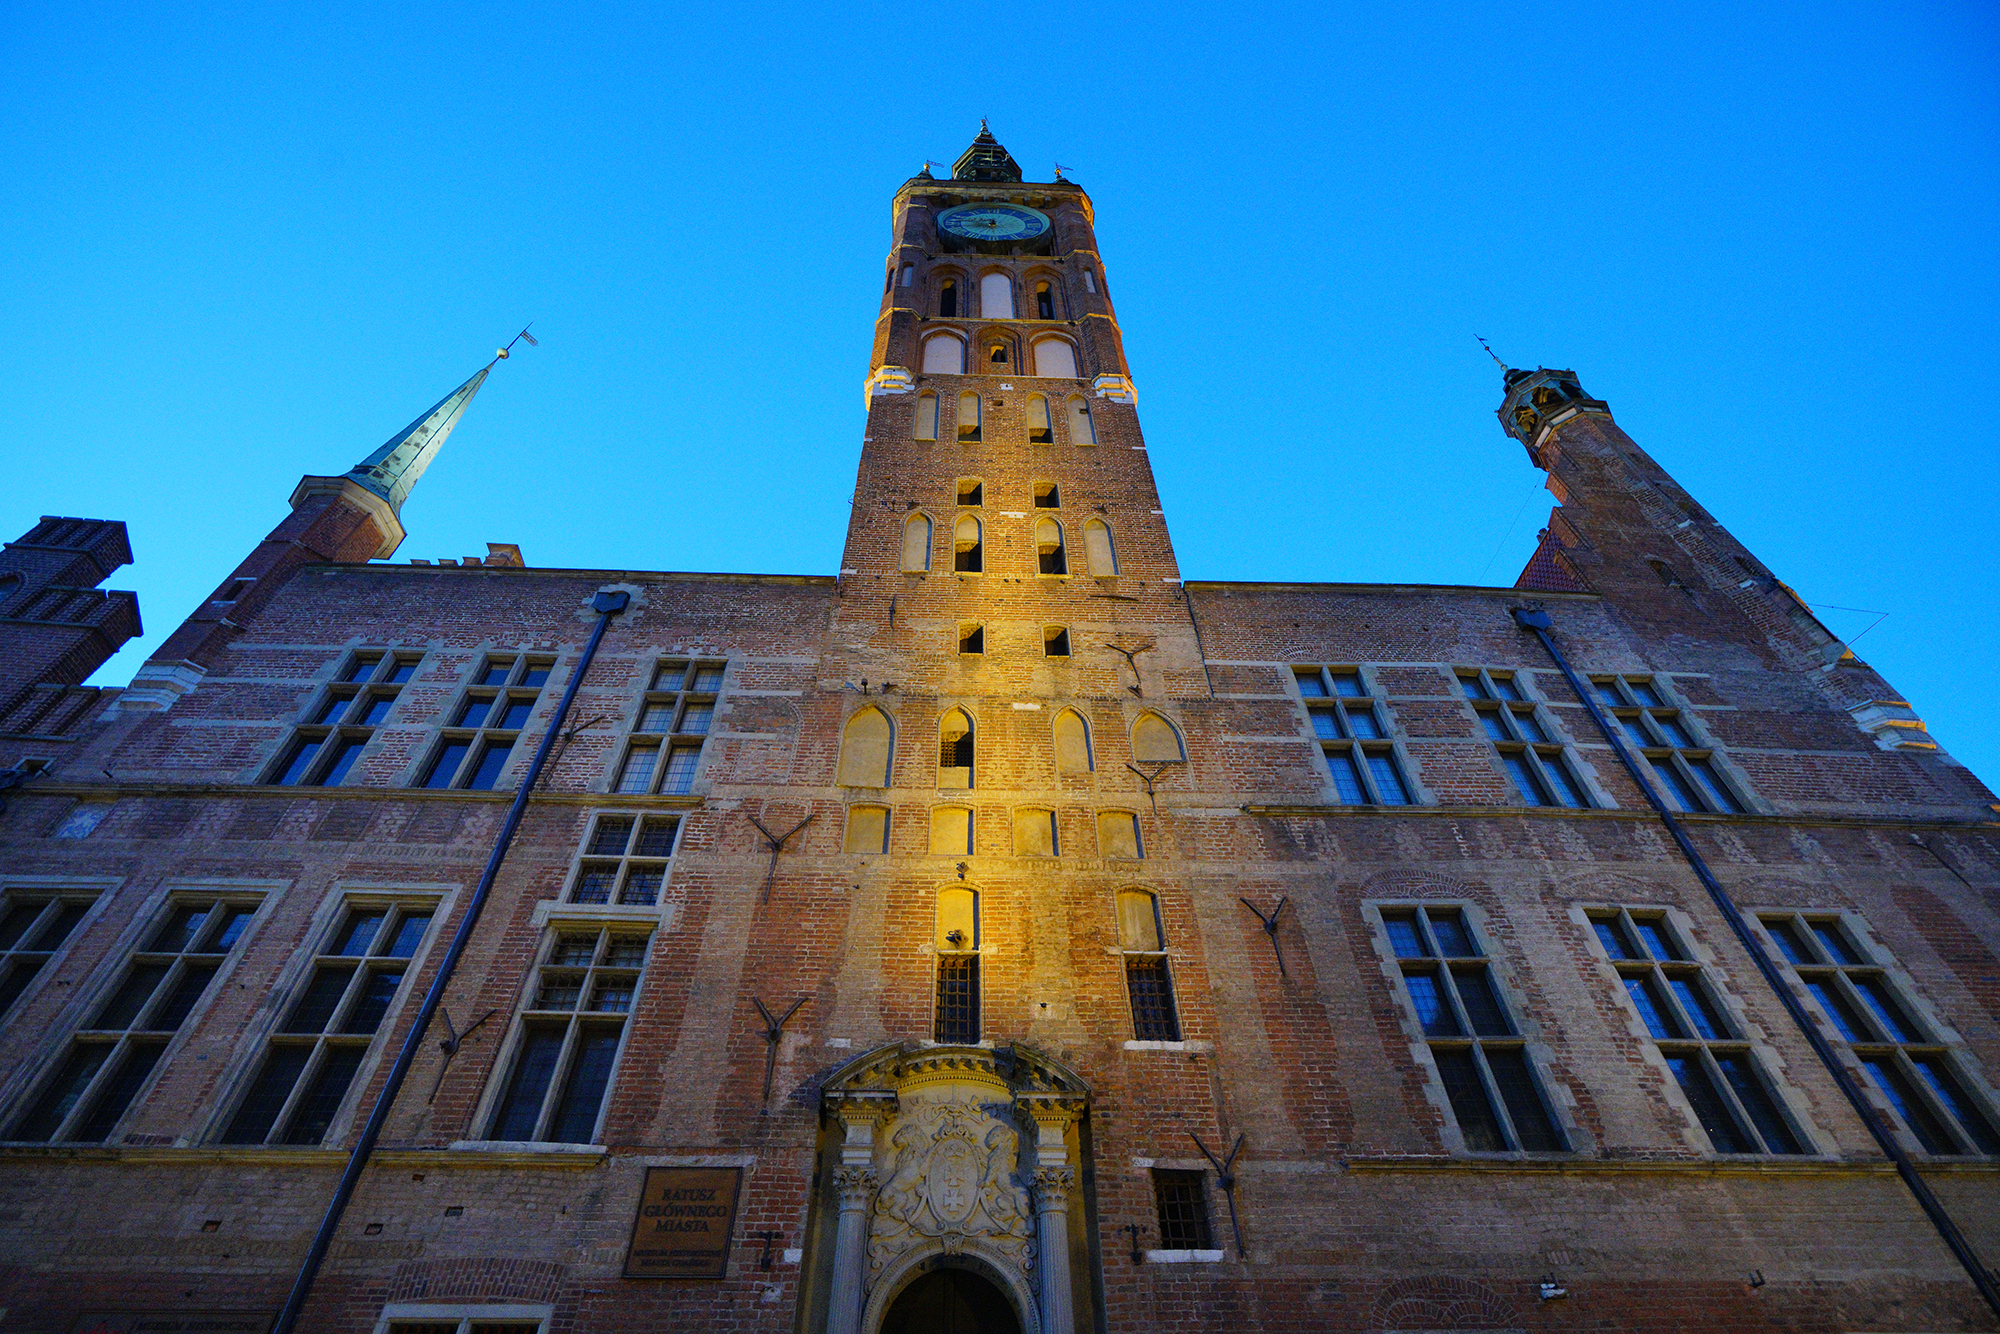 Widok na wieżę Ratusza z ulicy Długiej. W dole portal wejściowy zwieńczony herbem Gdańska. Na samej górze widać tarczę zegarową.